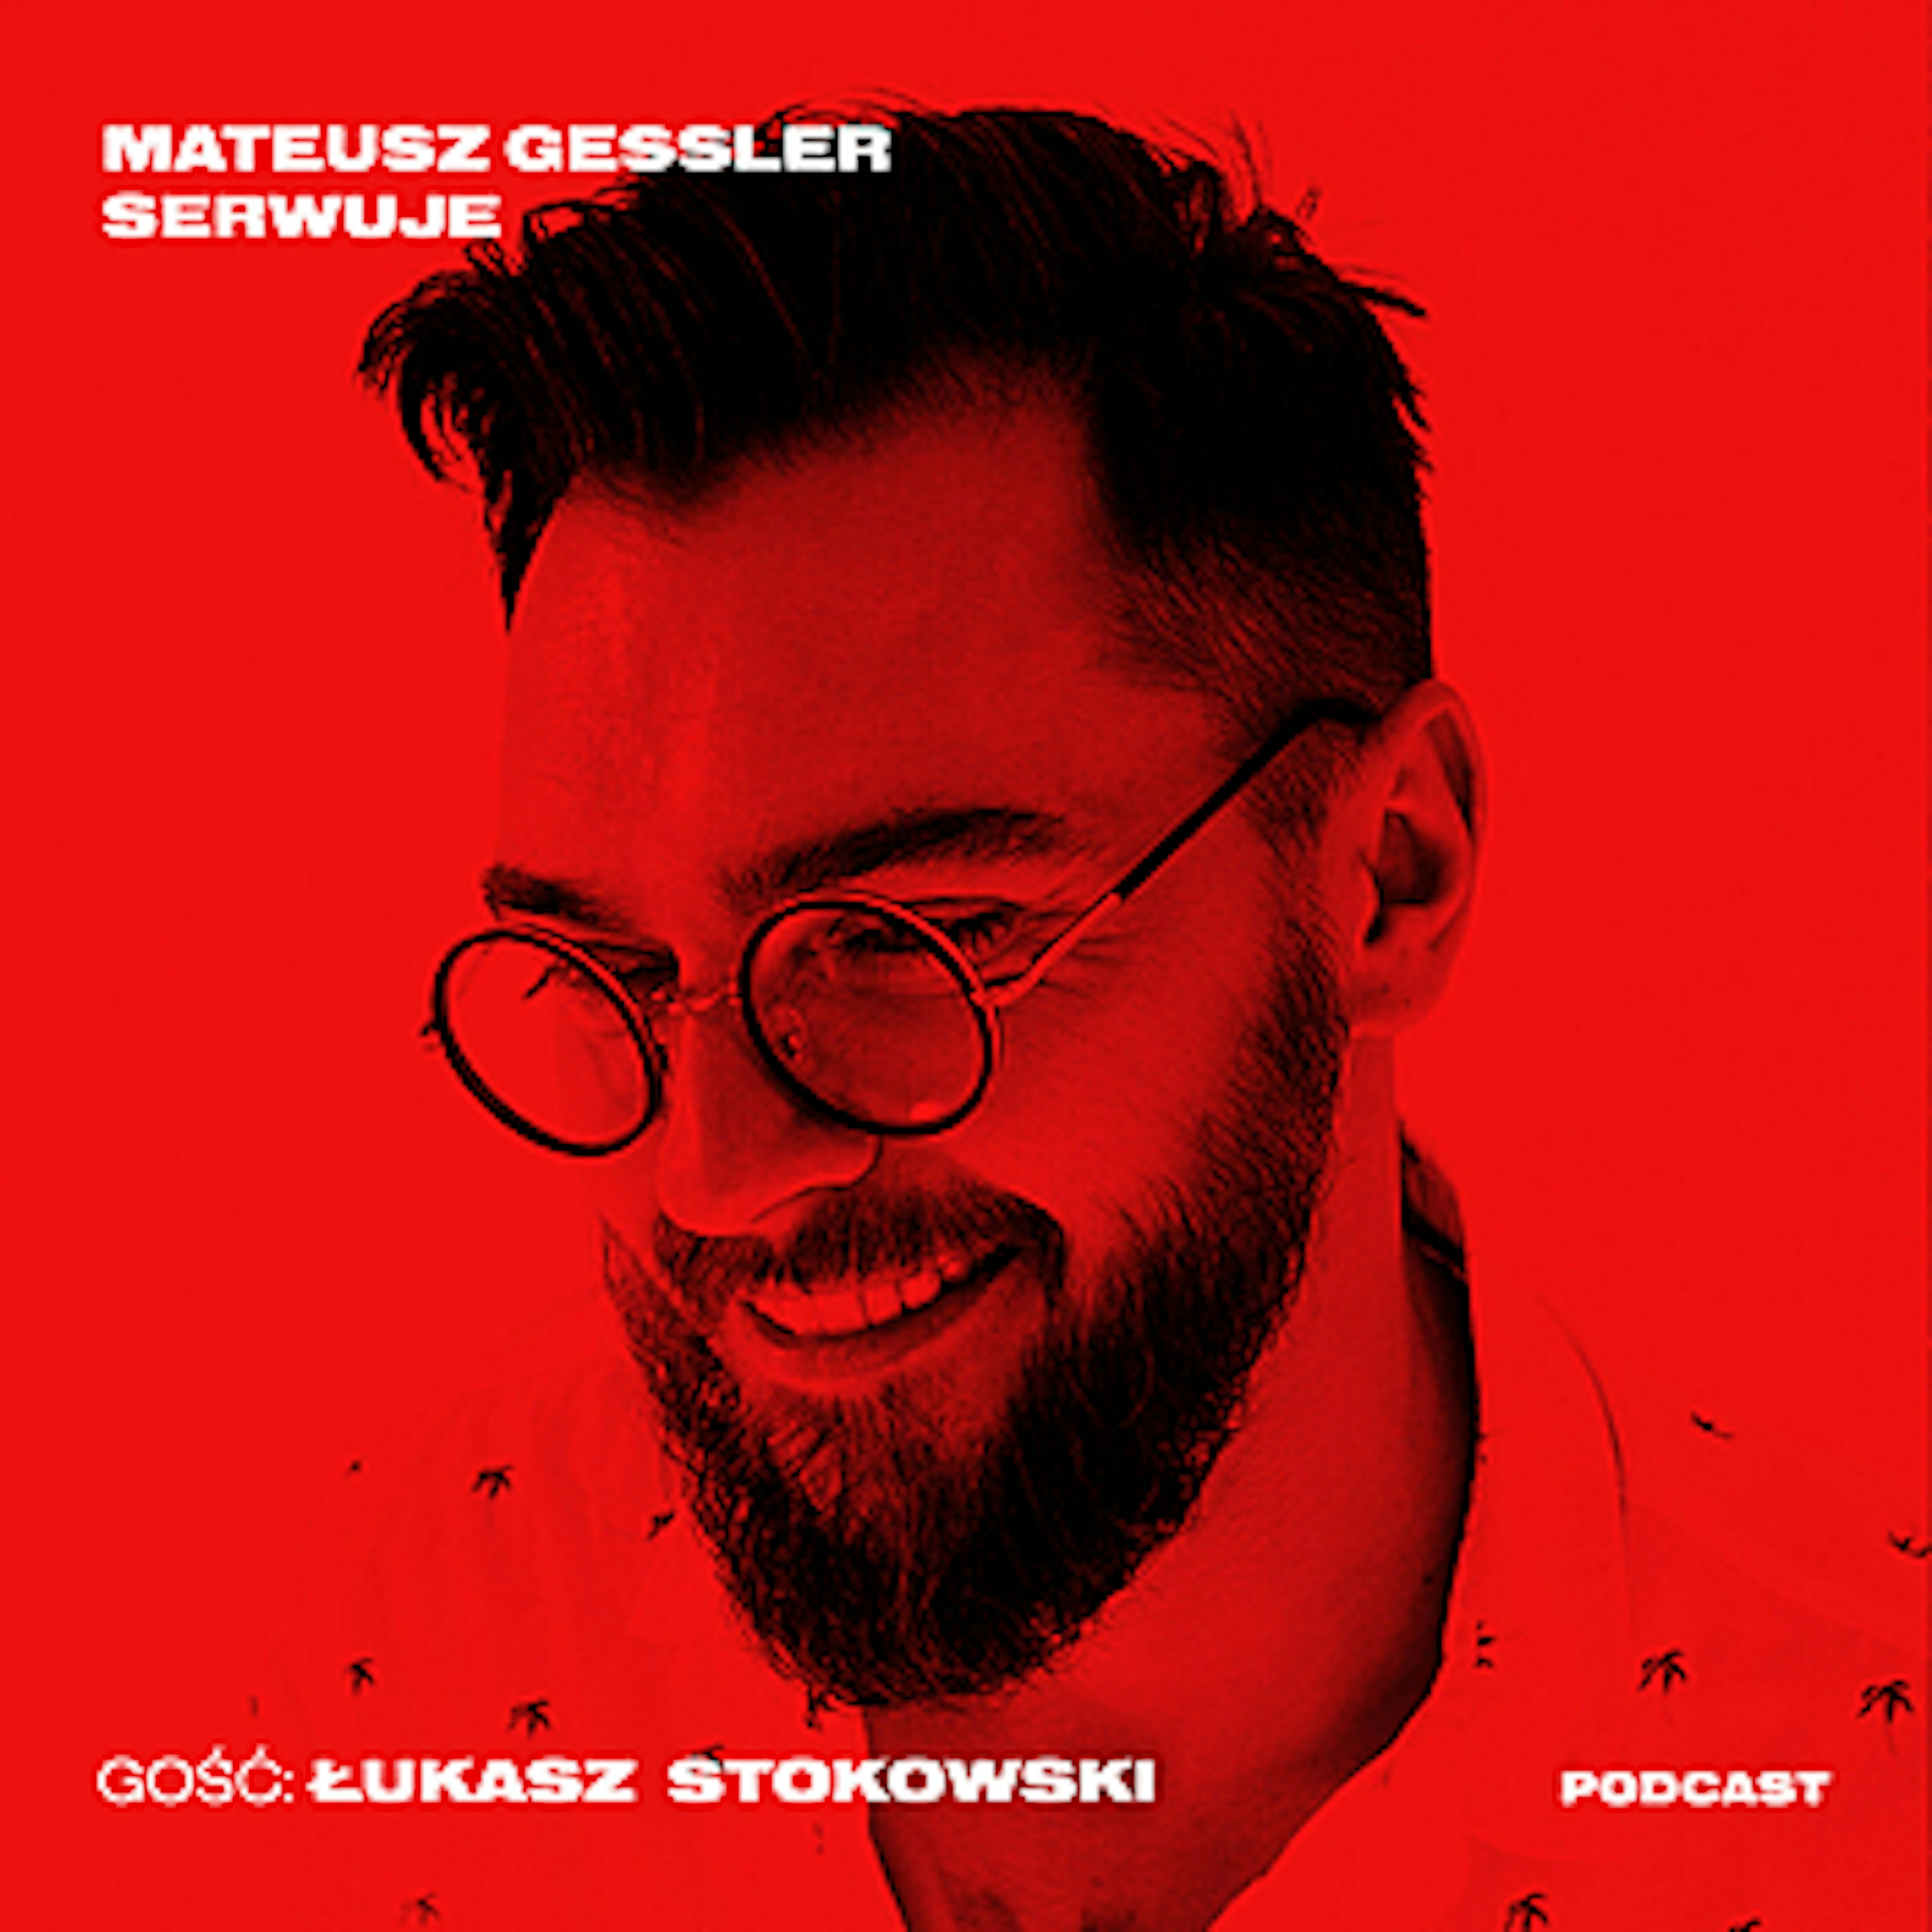 Mateusz Gessler Serwuje - Łukasz Stokowski: jak deformować sztukę?